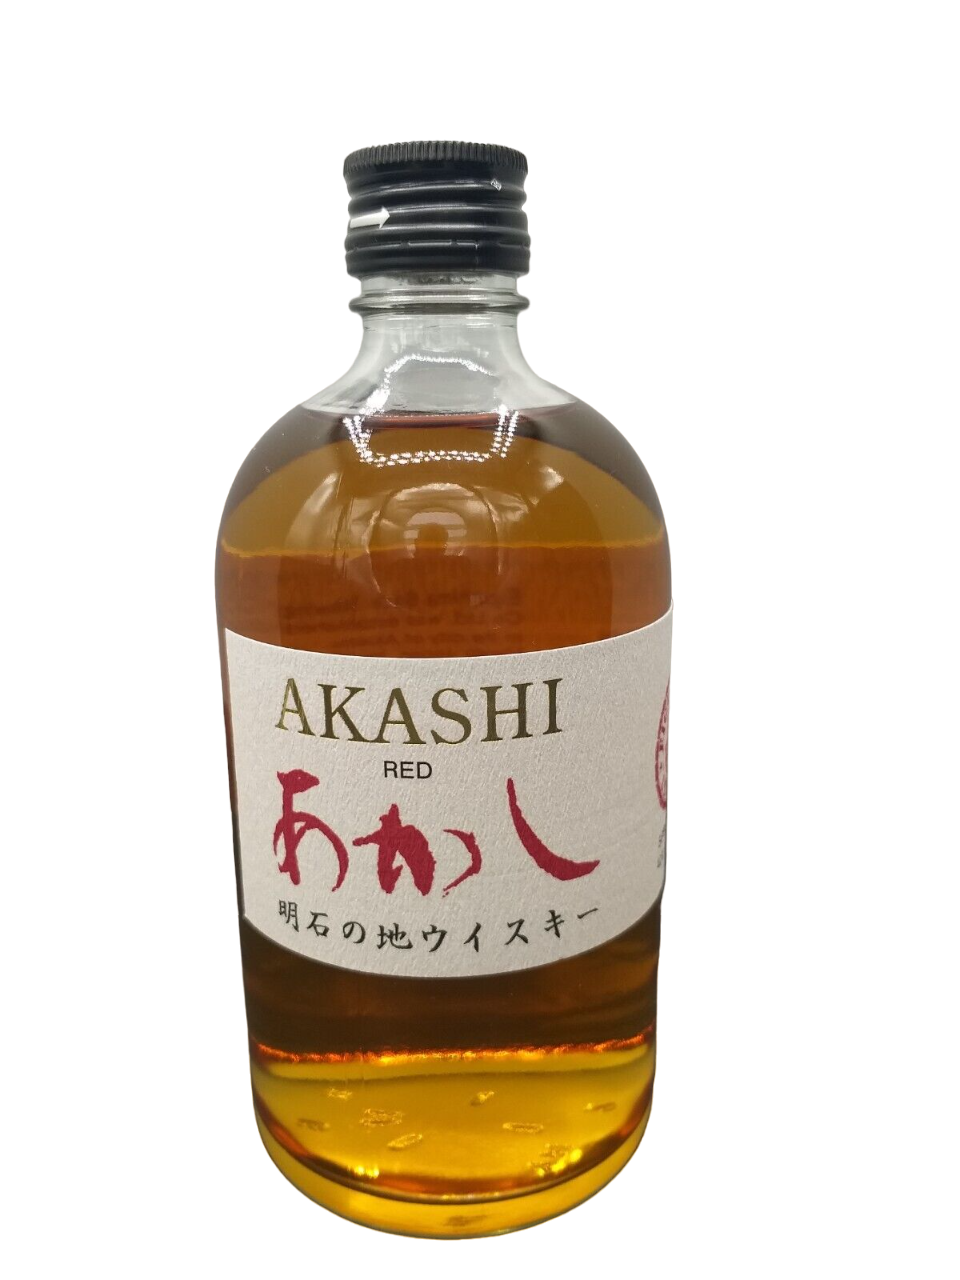 Akashi Red Spirit Drink Japan 40% Alkohol Japan 0,5 Liter